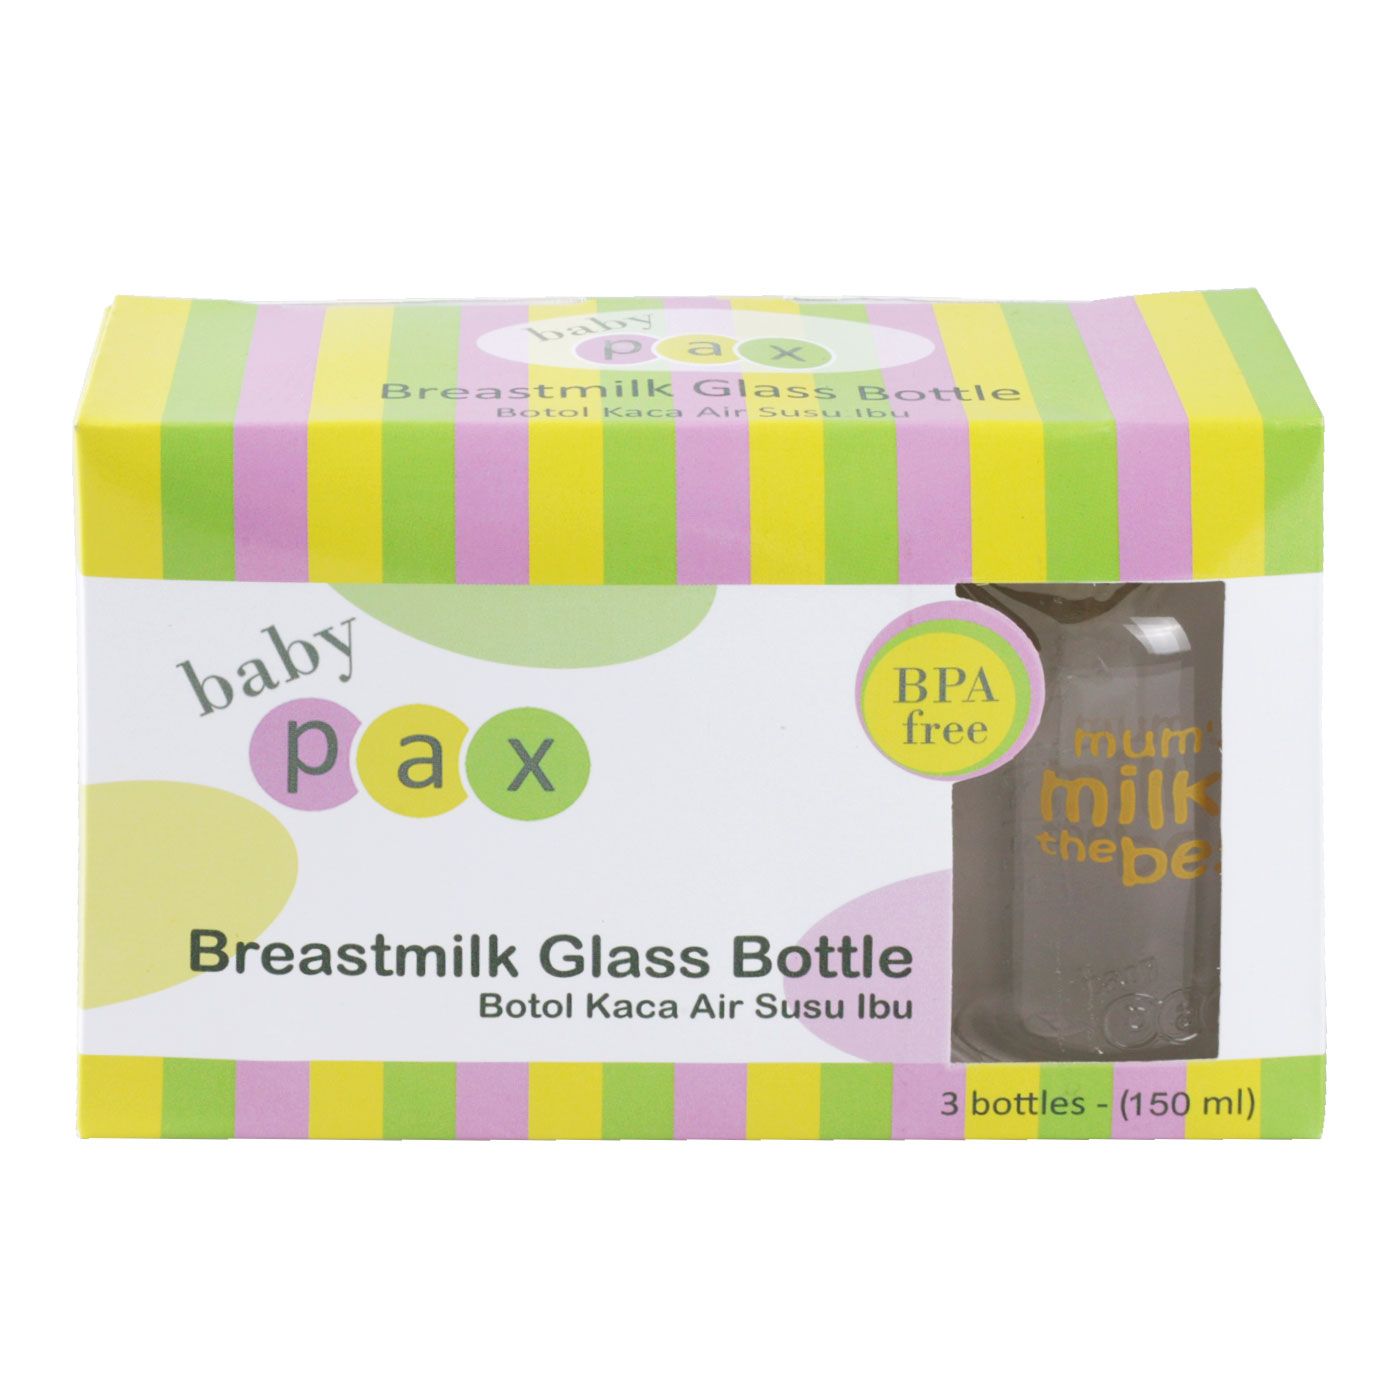 Babypax Breastmilk Glass Bottle Pack 150ml (Isi 3) - 1